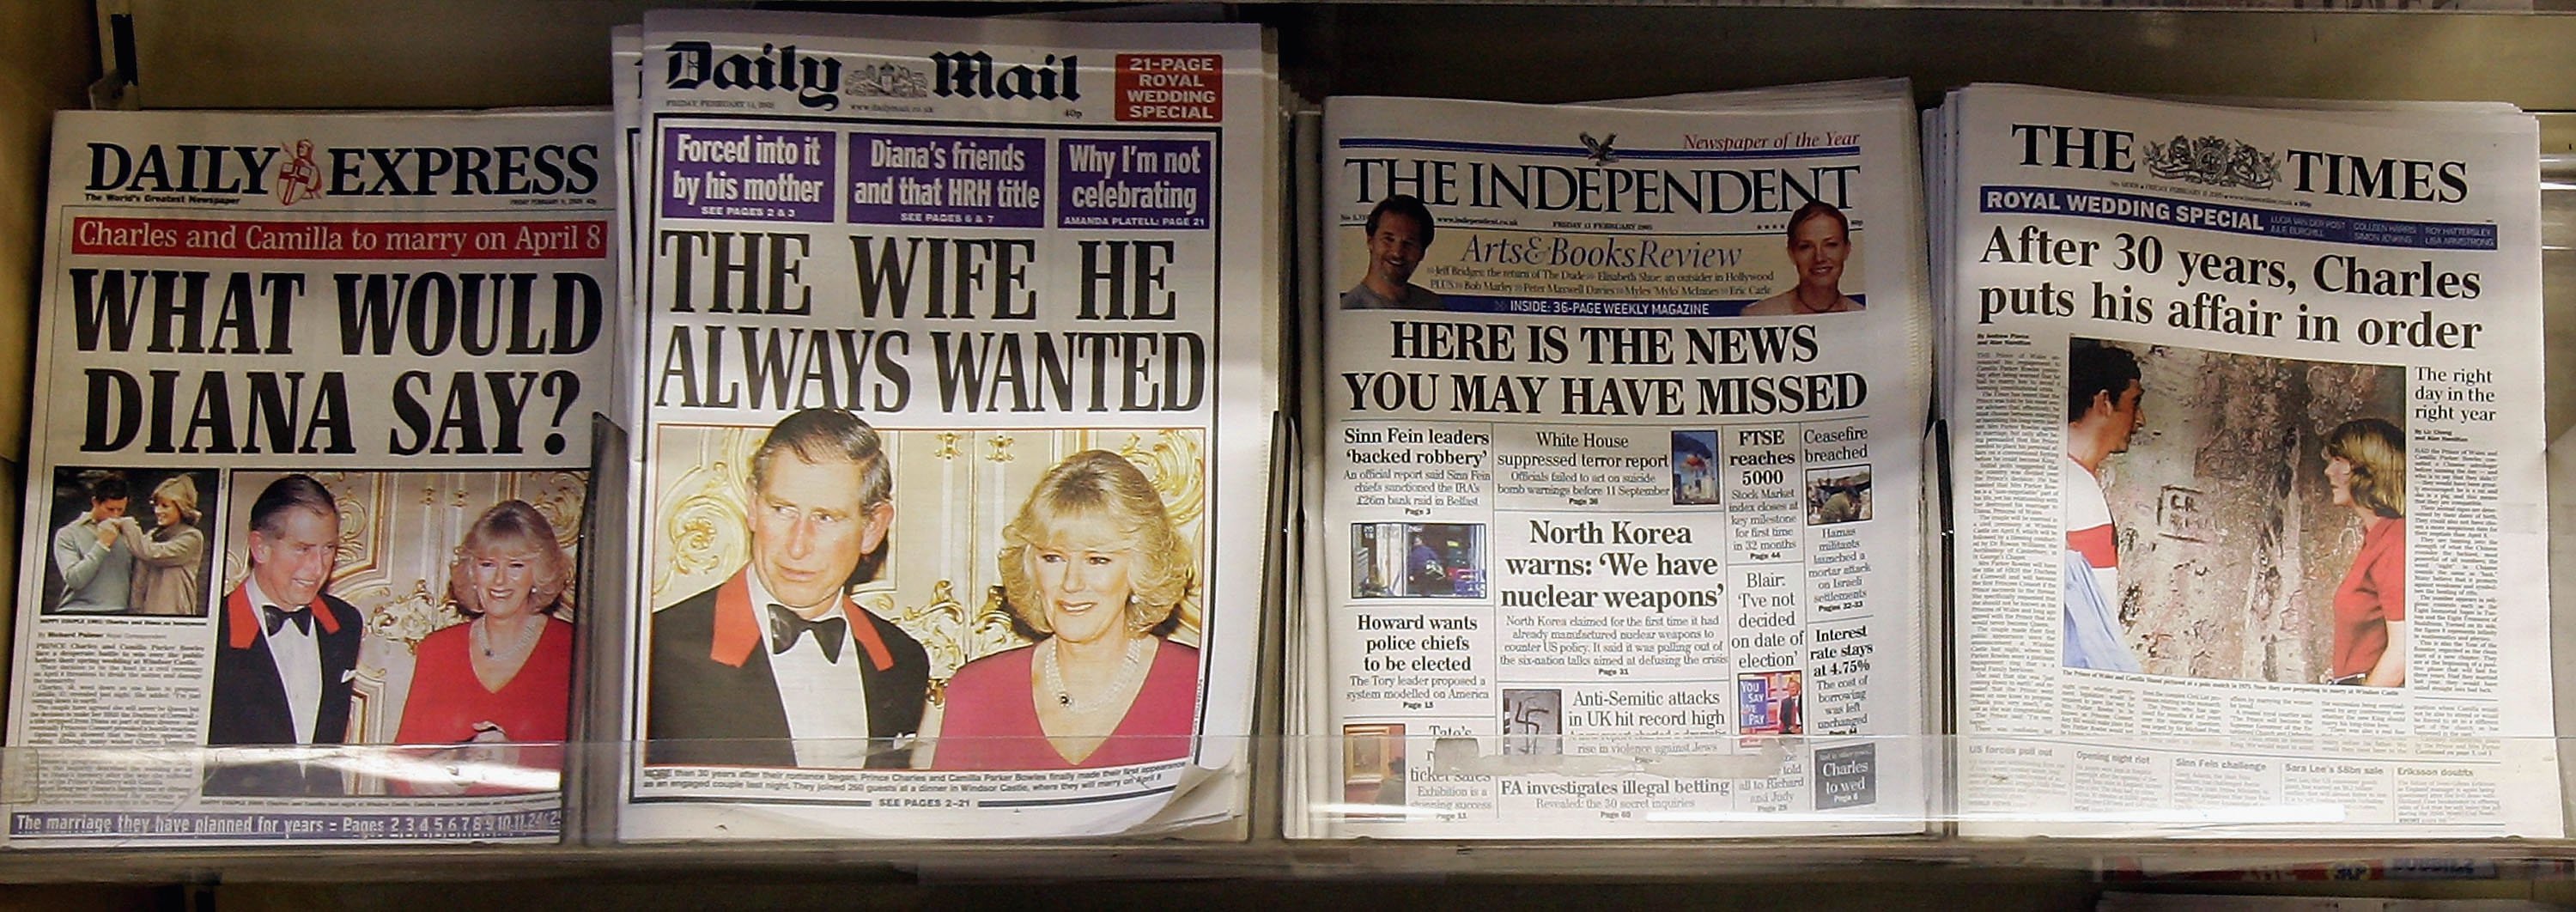 Des photographies du prince Charles et de Camilla Parker Bowles dominent les quotidiens britanniques alors qu'elles sont exposées dans un kiosque à journaux le 11 février 2005 à Londres, en Angleterre | Source : Getty Images